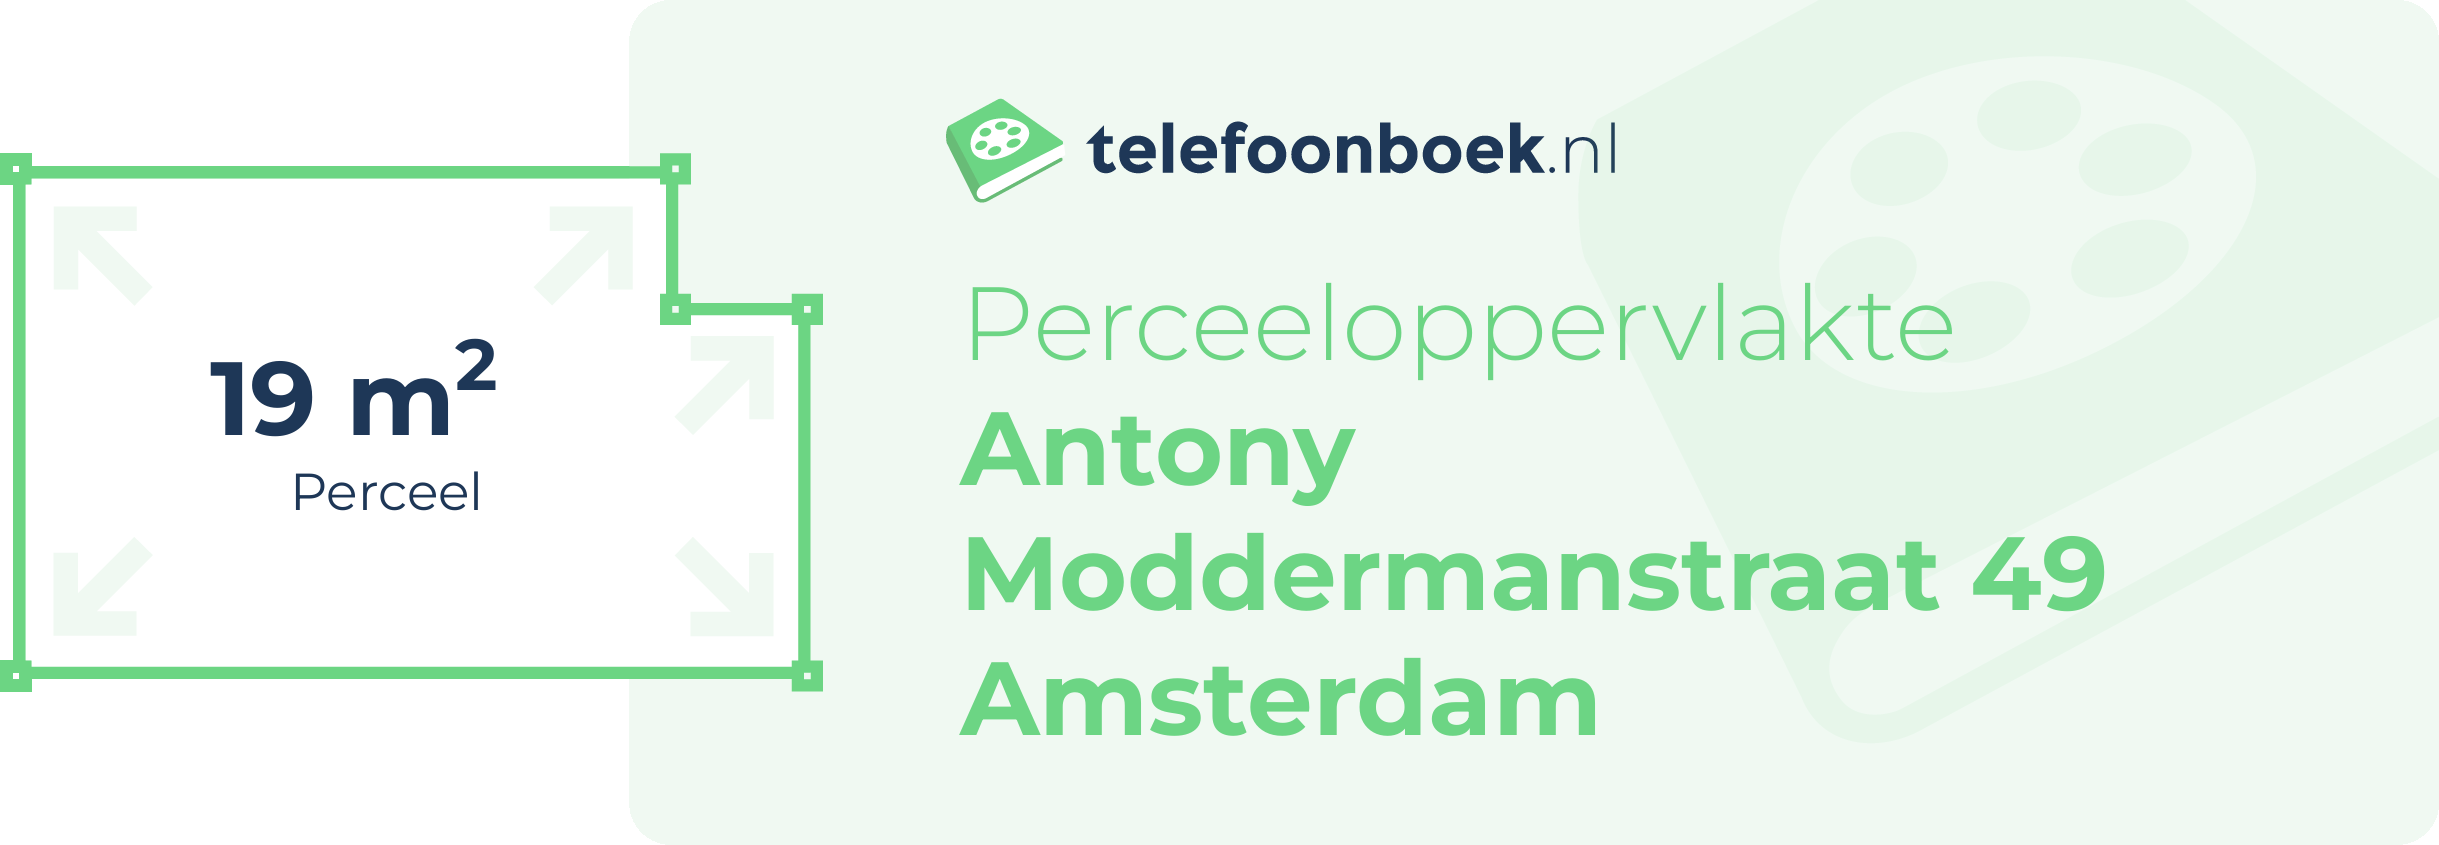 Perceeloppervlakte Antony Moddermanstraat 49 Amsterdam